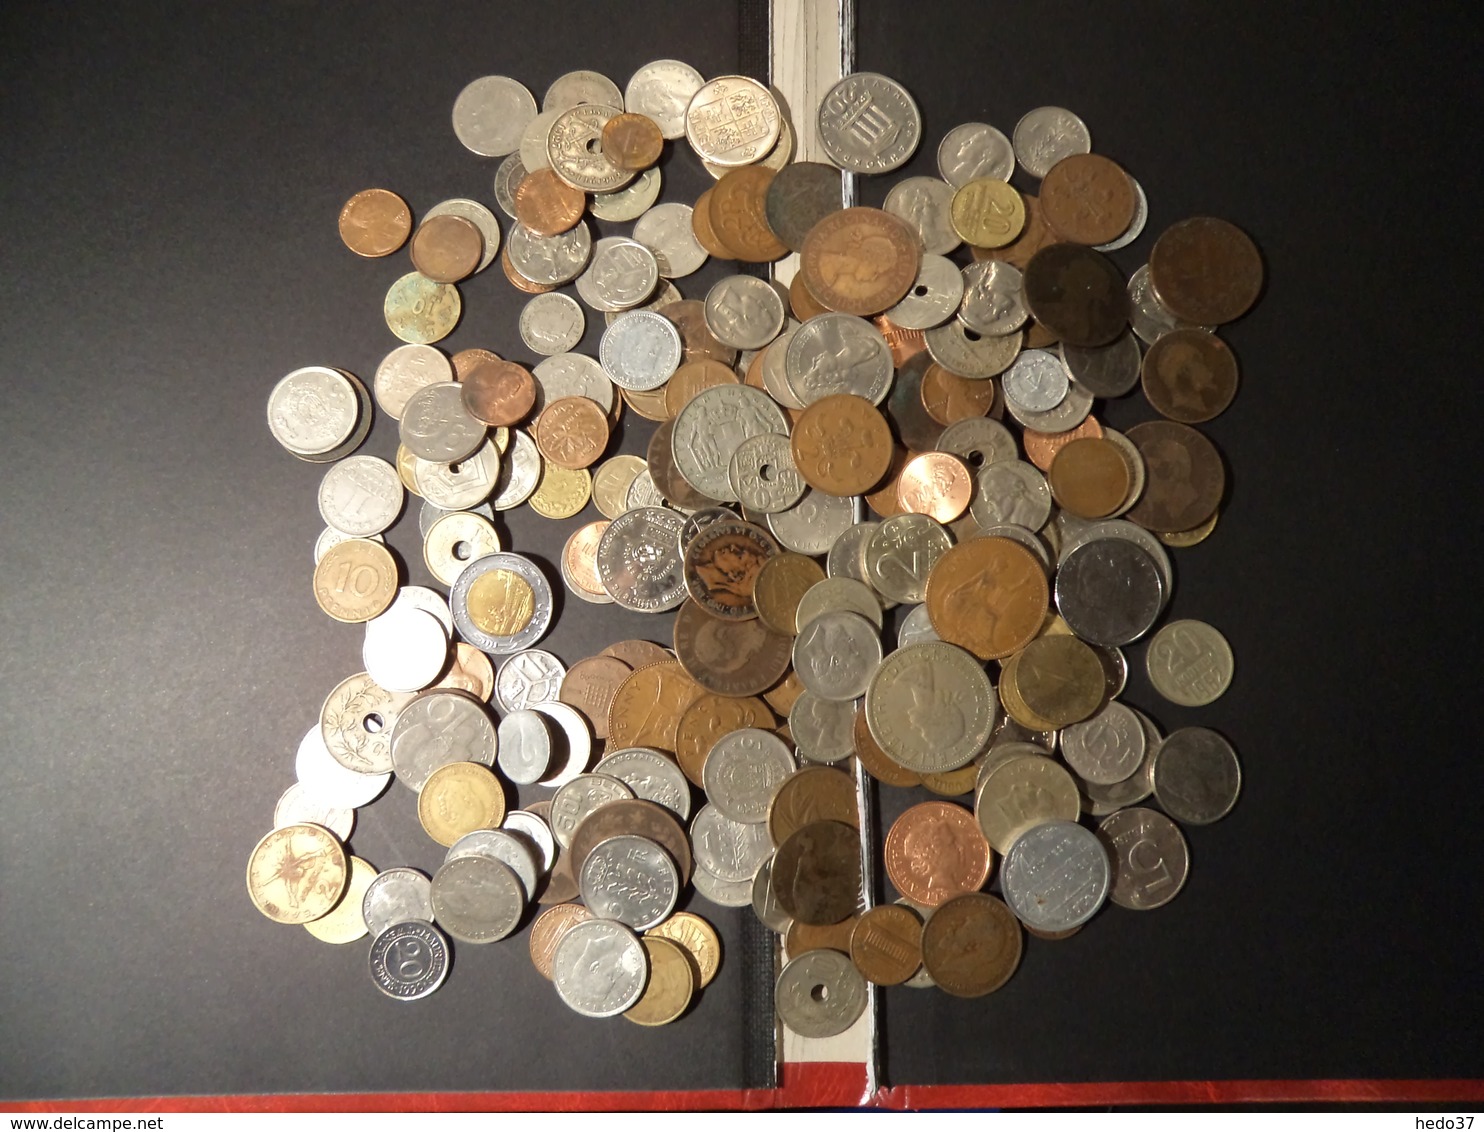 1 Kilo - Monnaies Tous Pays à Trier - Lots & Kiloware - Coins